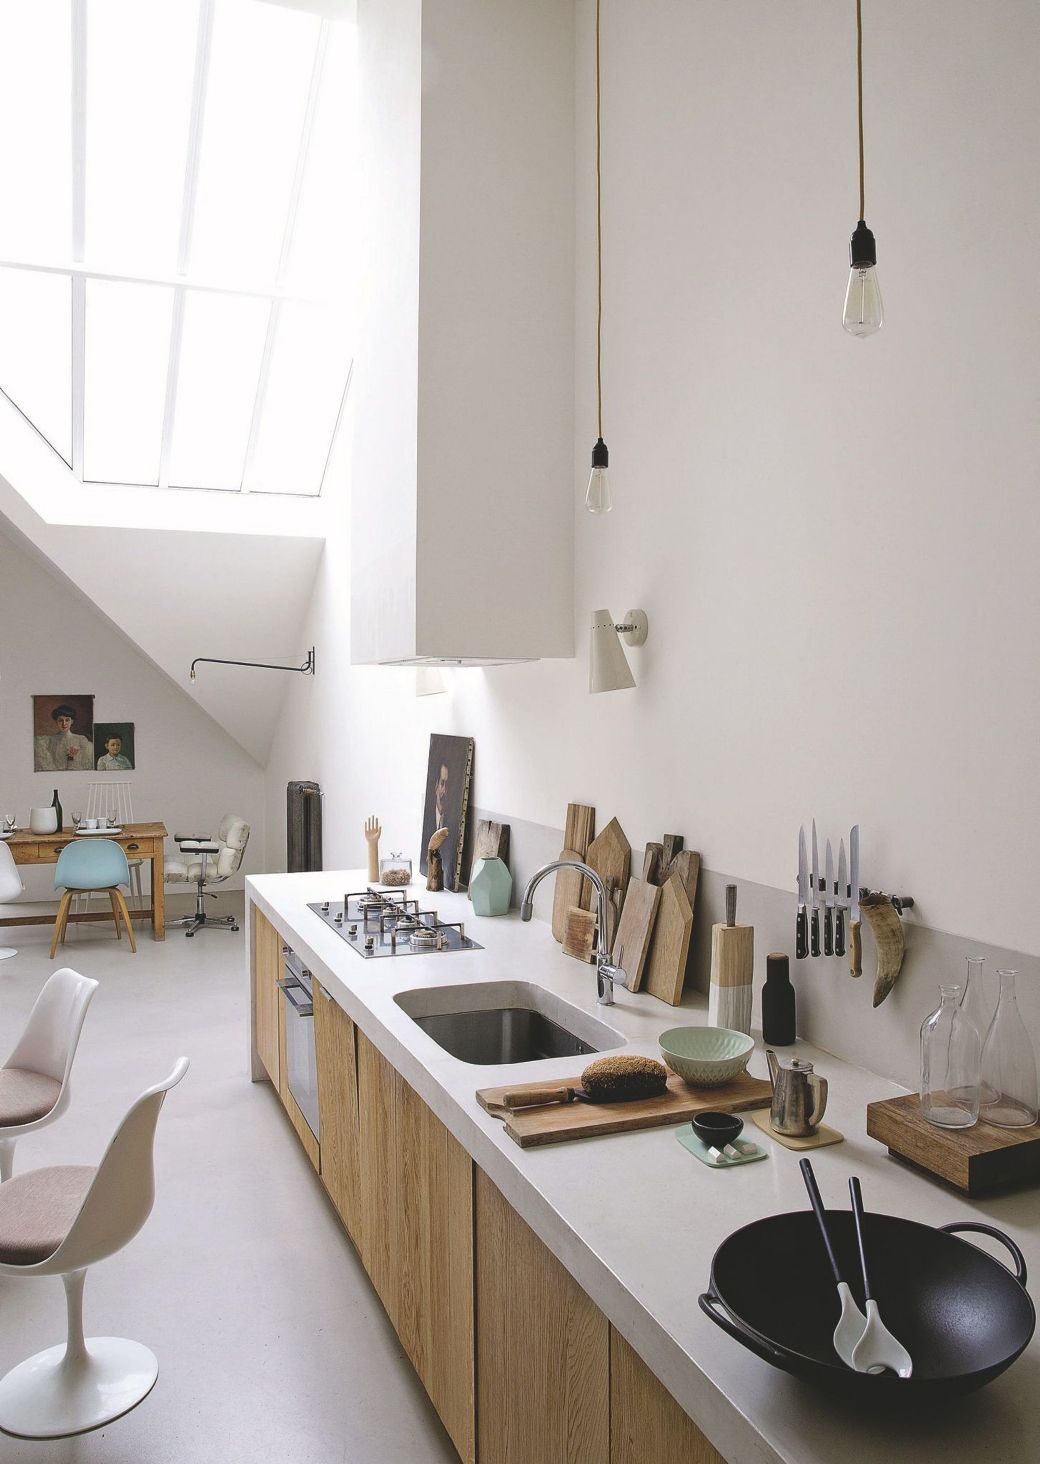 loft kitchen design ideas